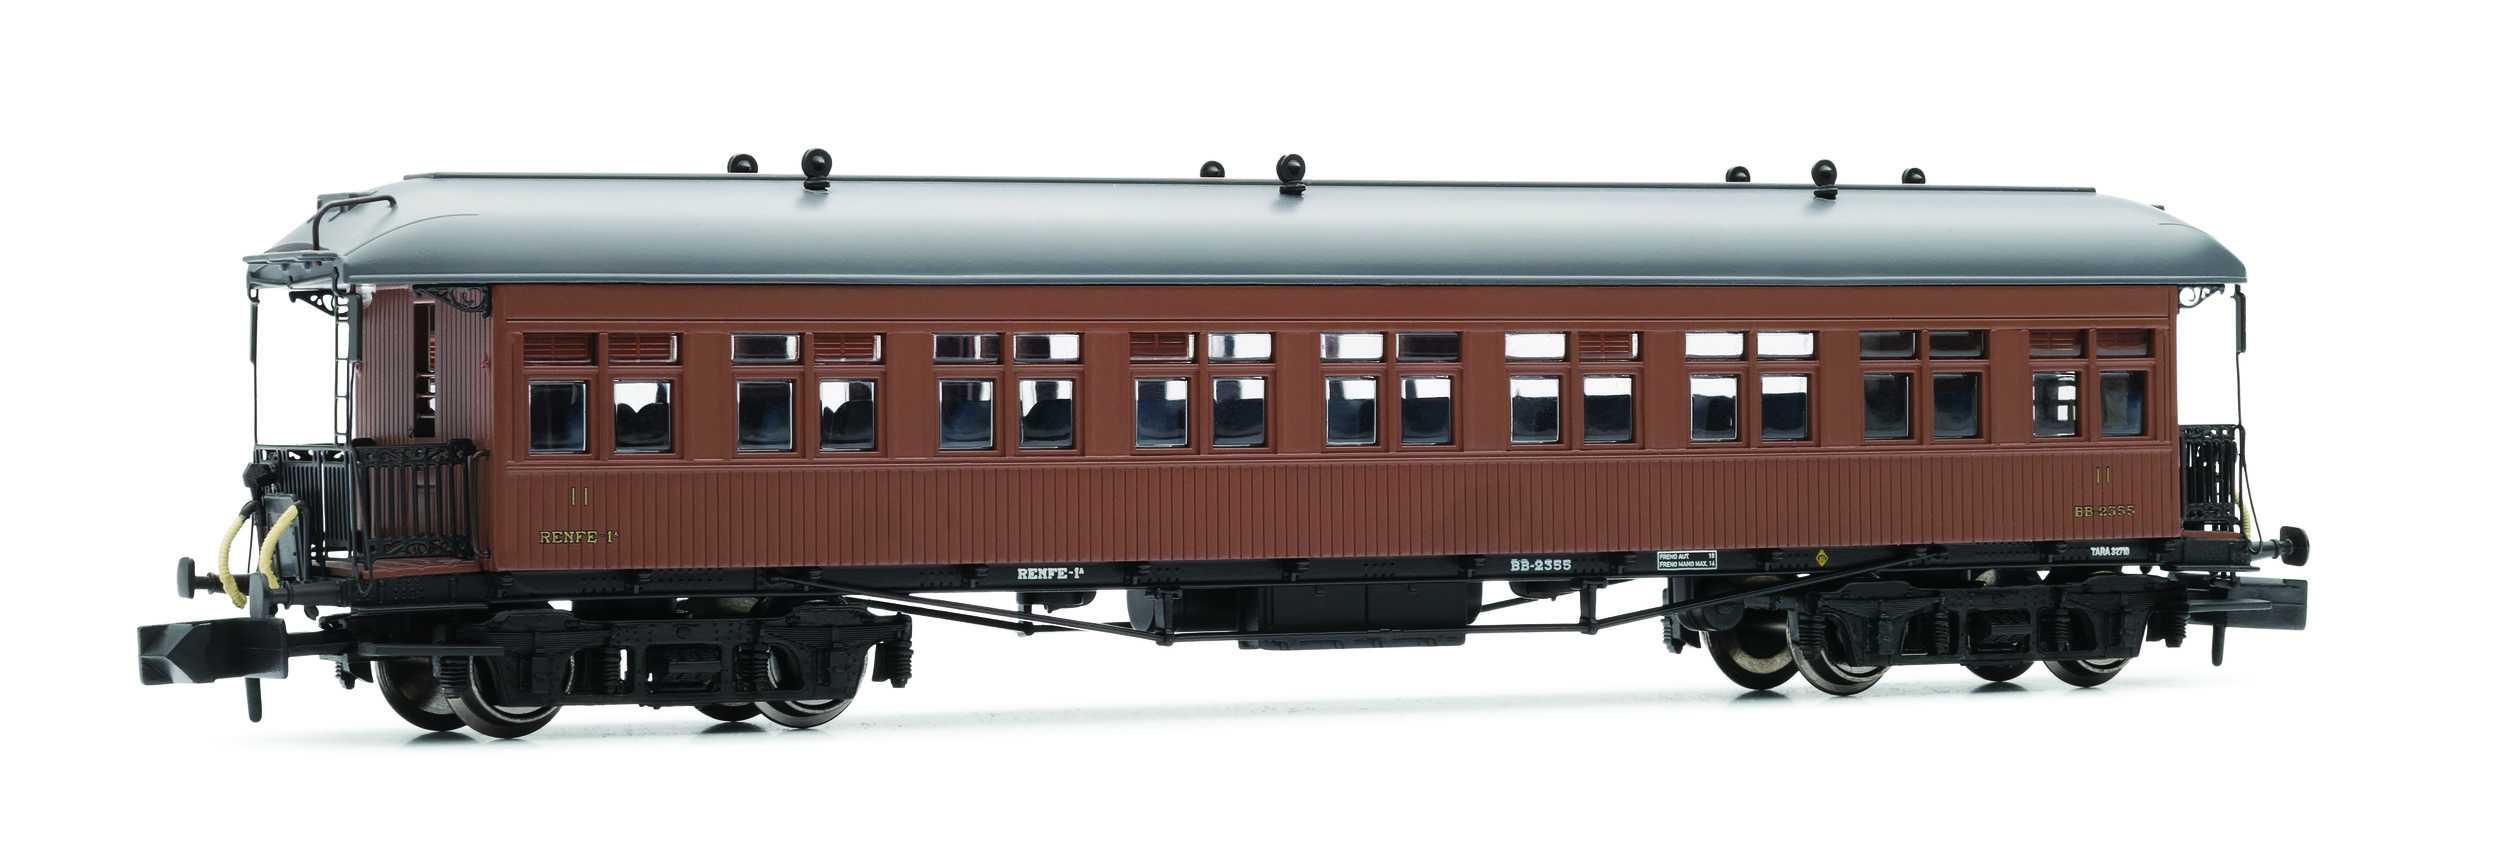 Trains miniatures : locomotives et autorail - Passager COSTA, 2e class